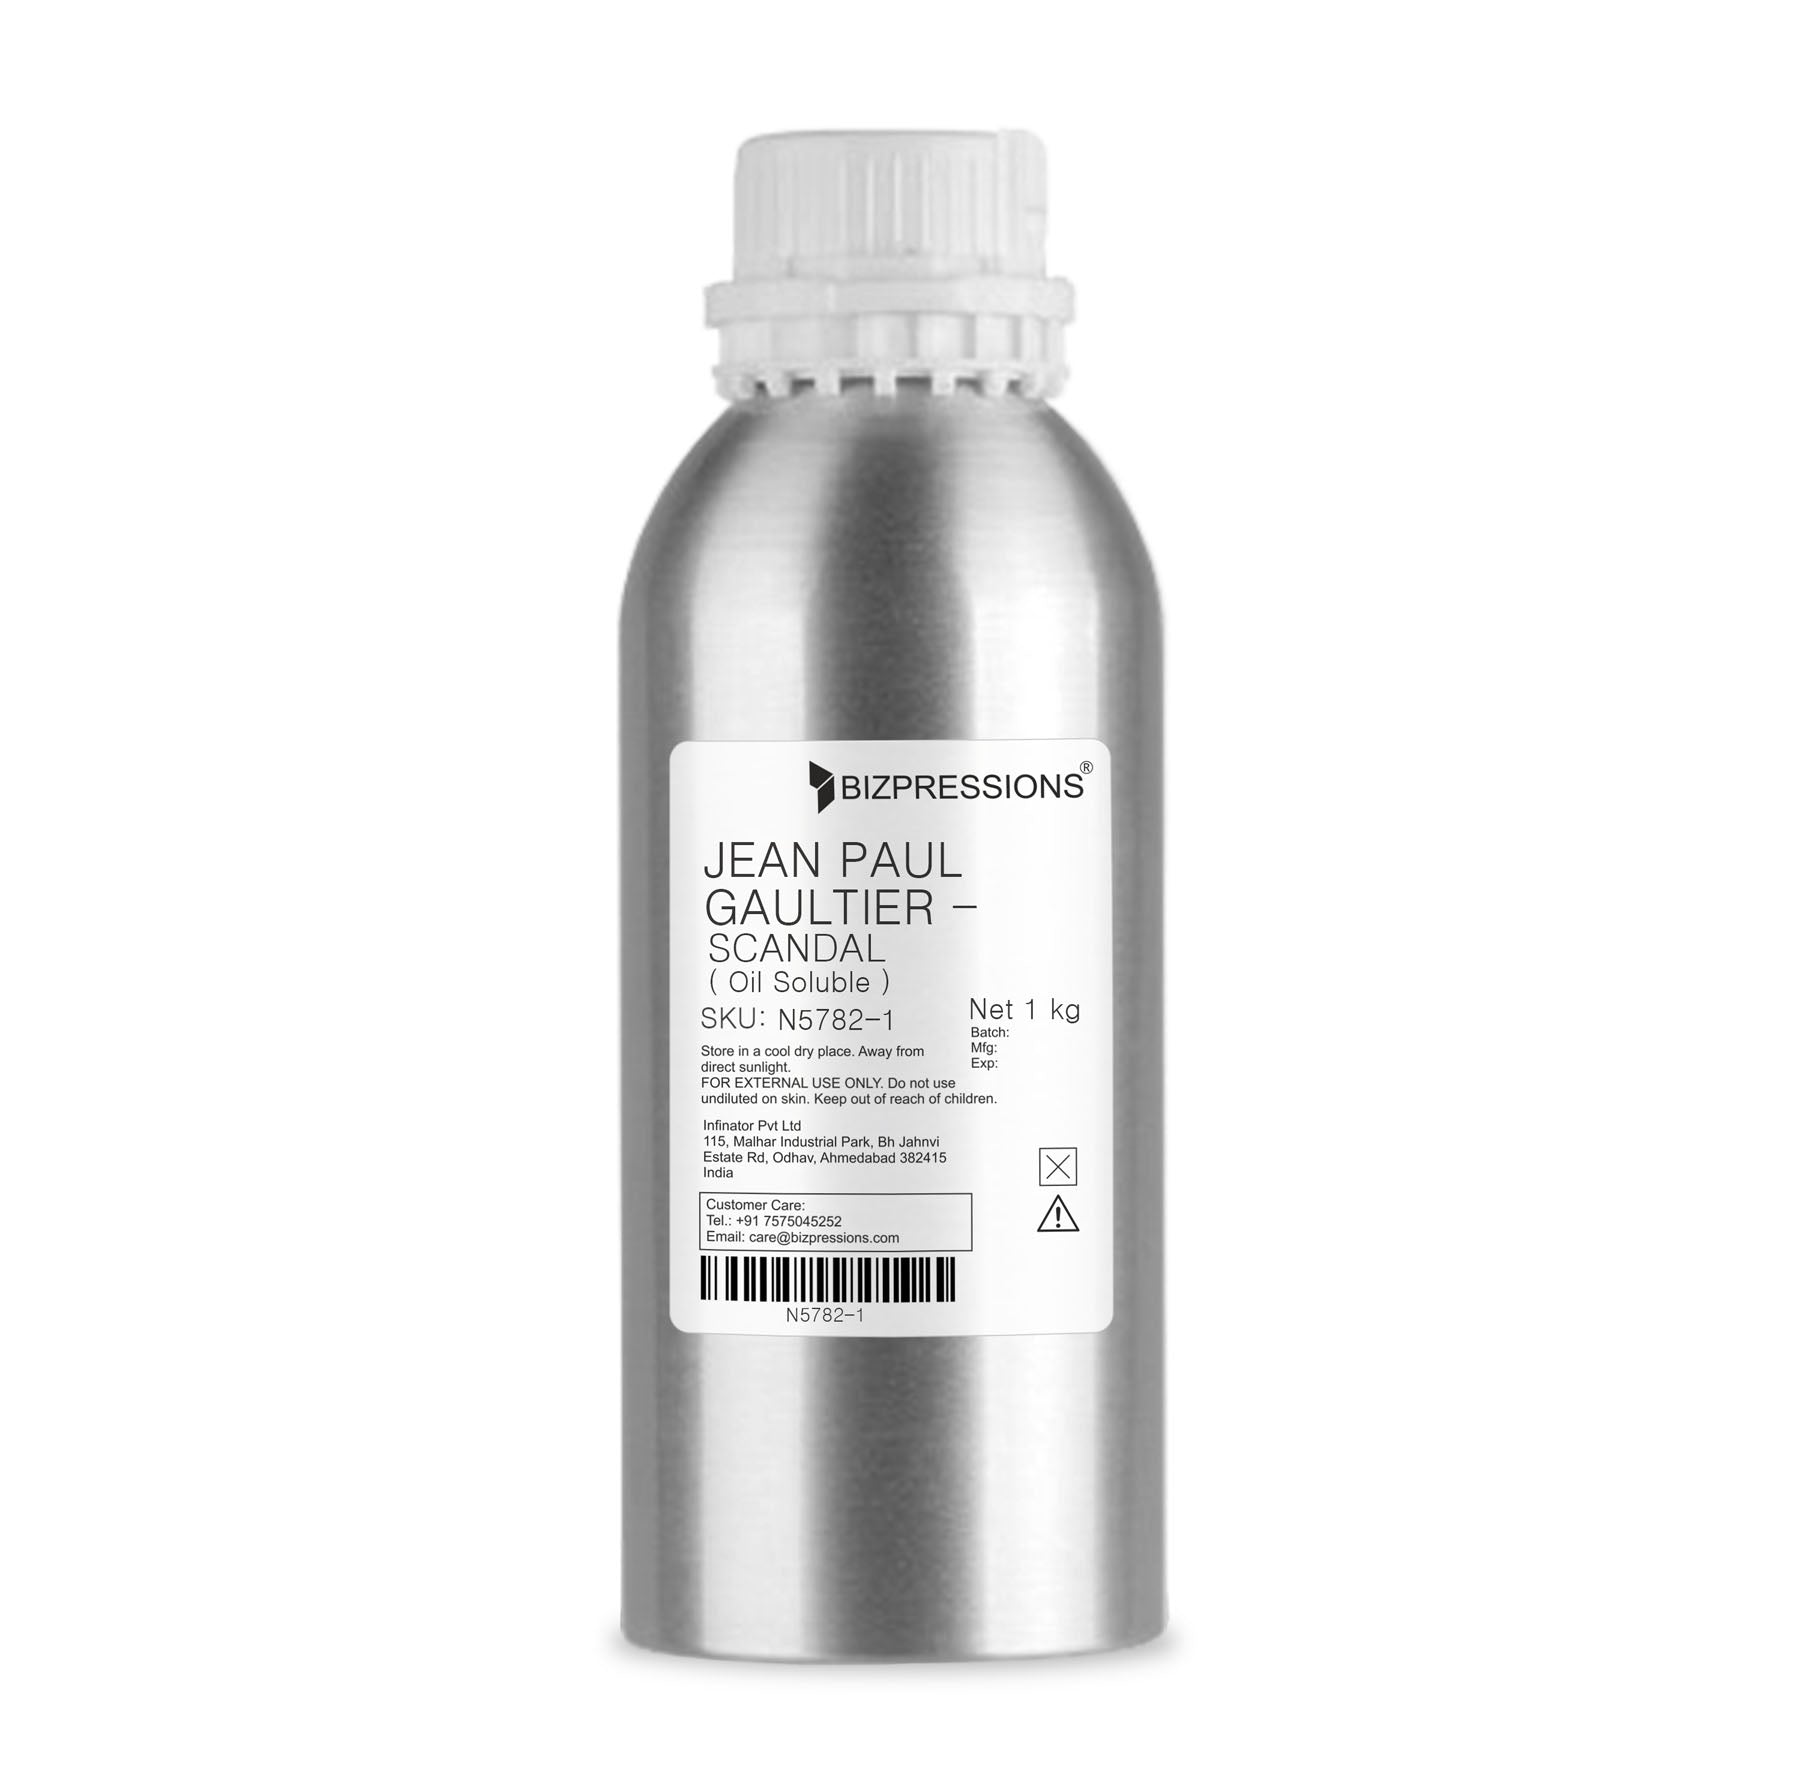 JEAN PAUL GAULTIER - SCANDAL - Fragrance ( Oil Soluble ) - 1 kg